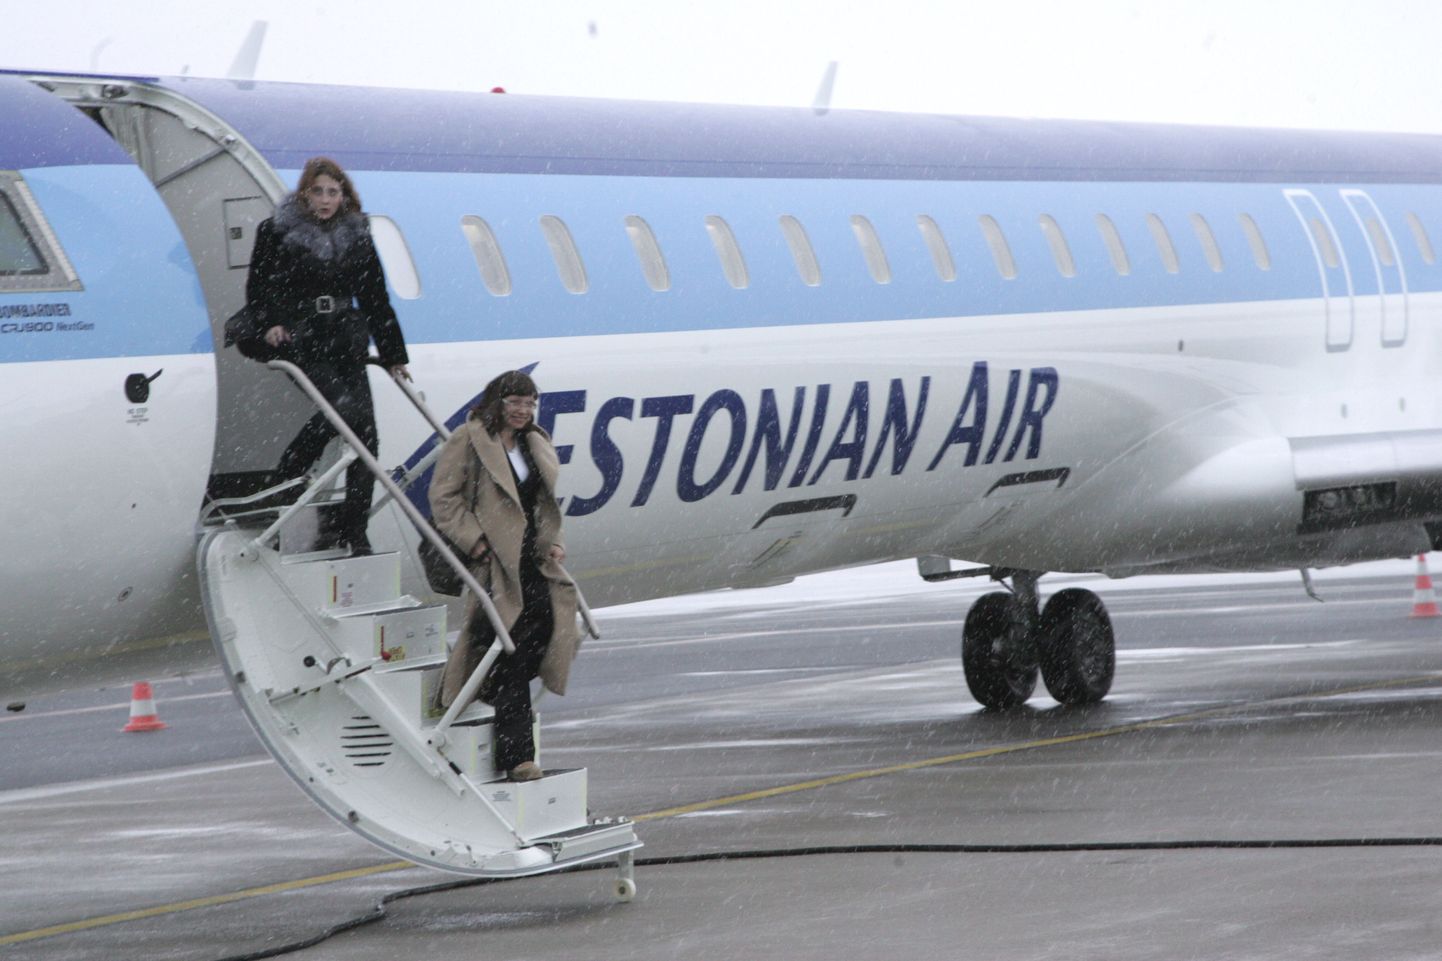 Estonian Airi lennuk.